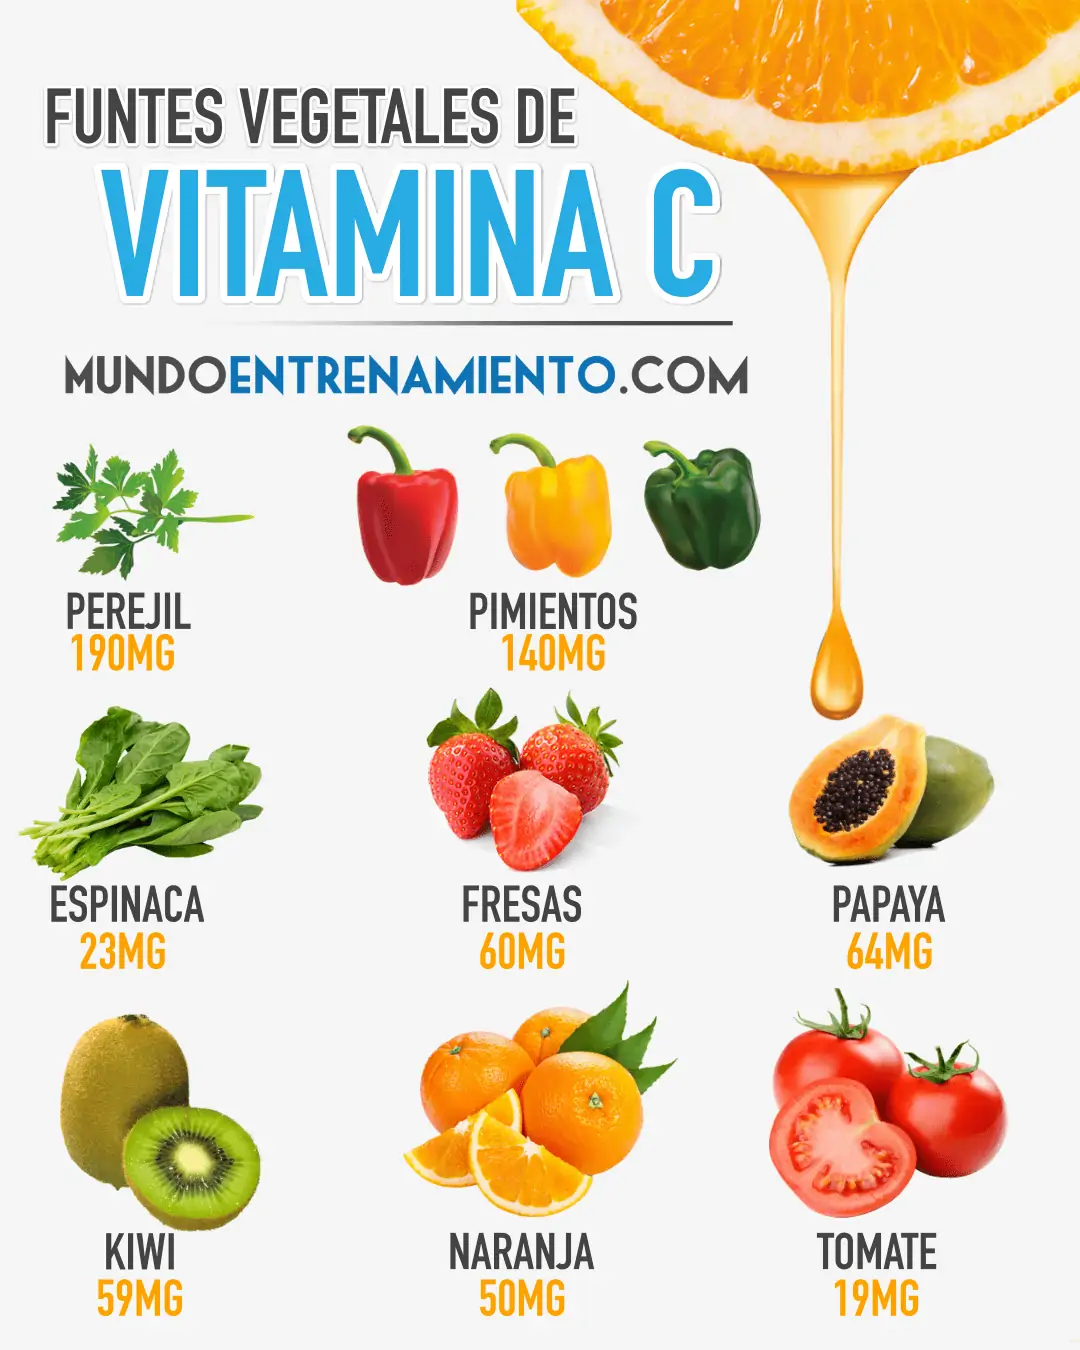 fuentes vegetales de vitamina C